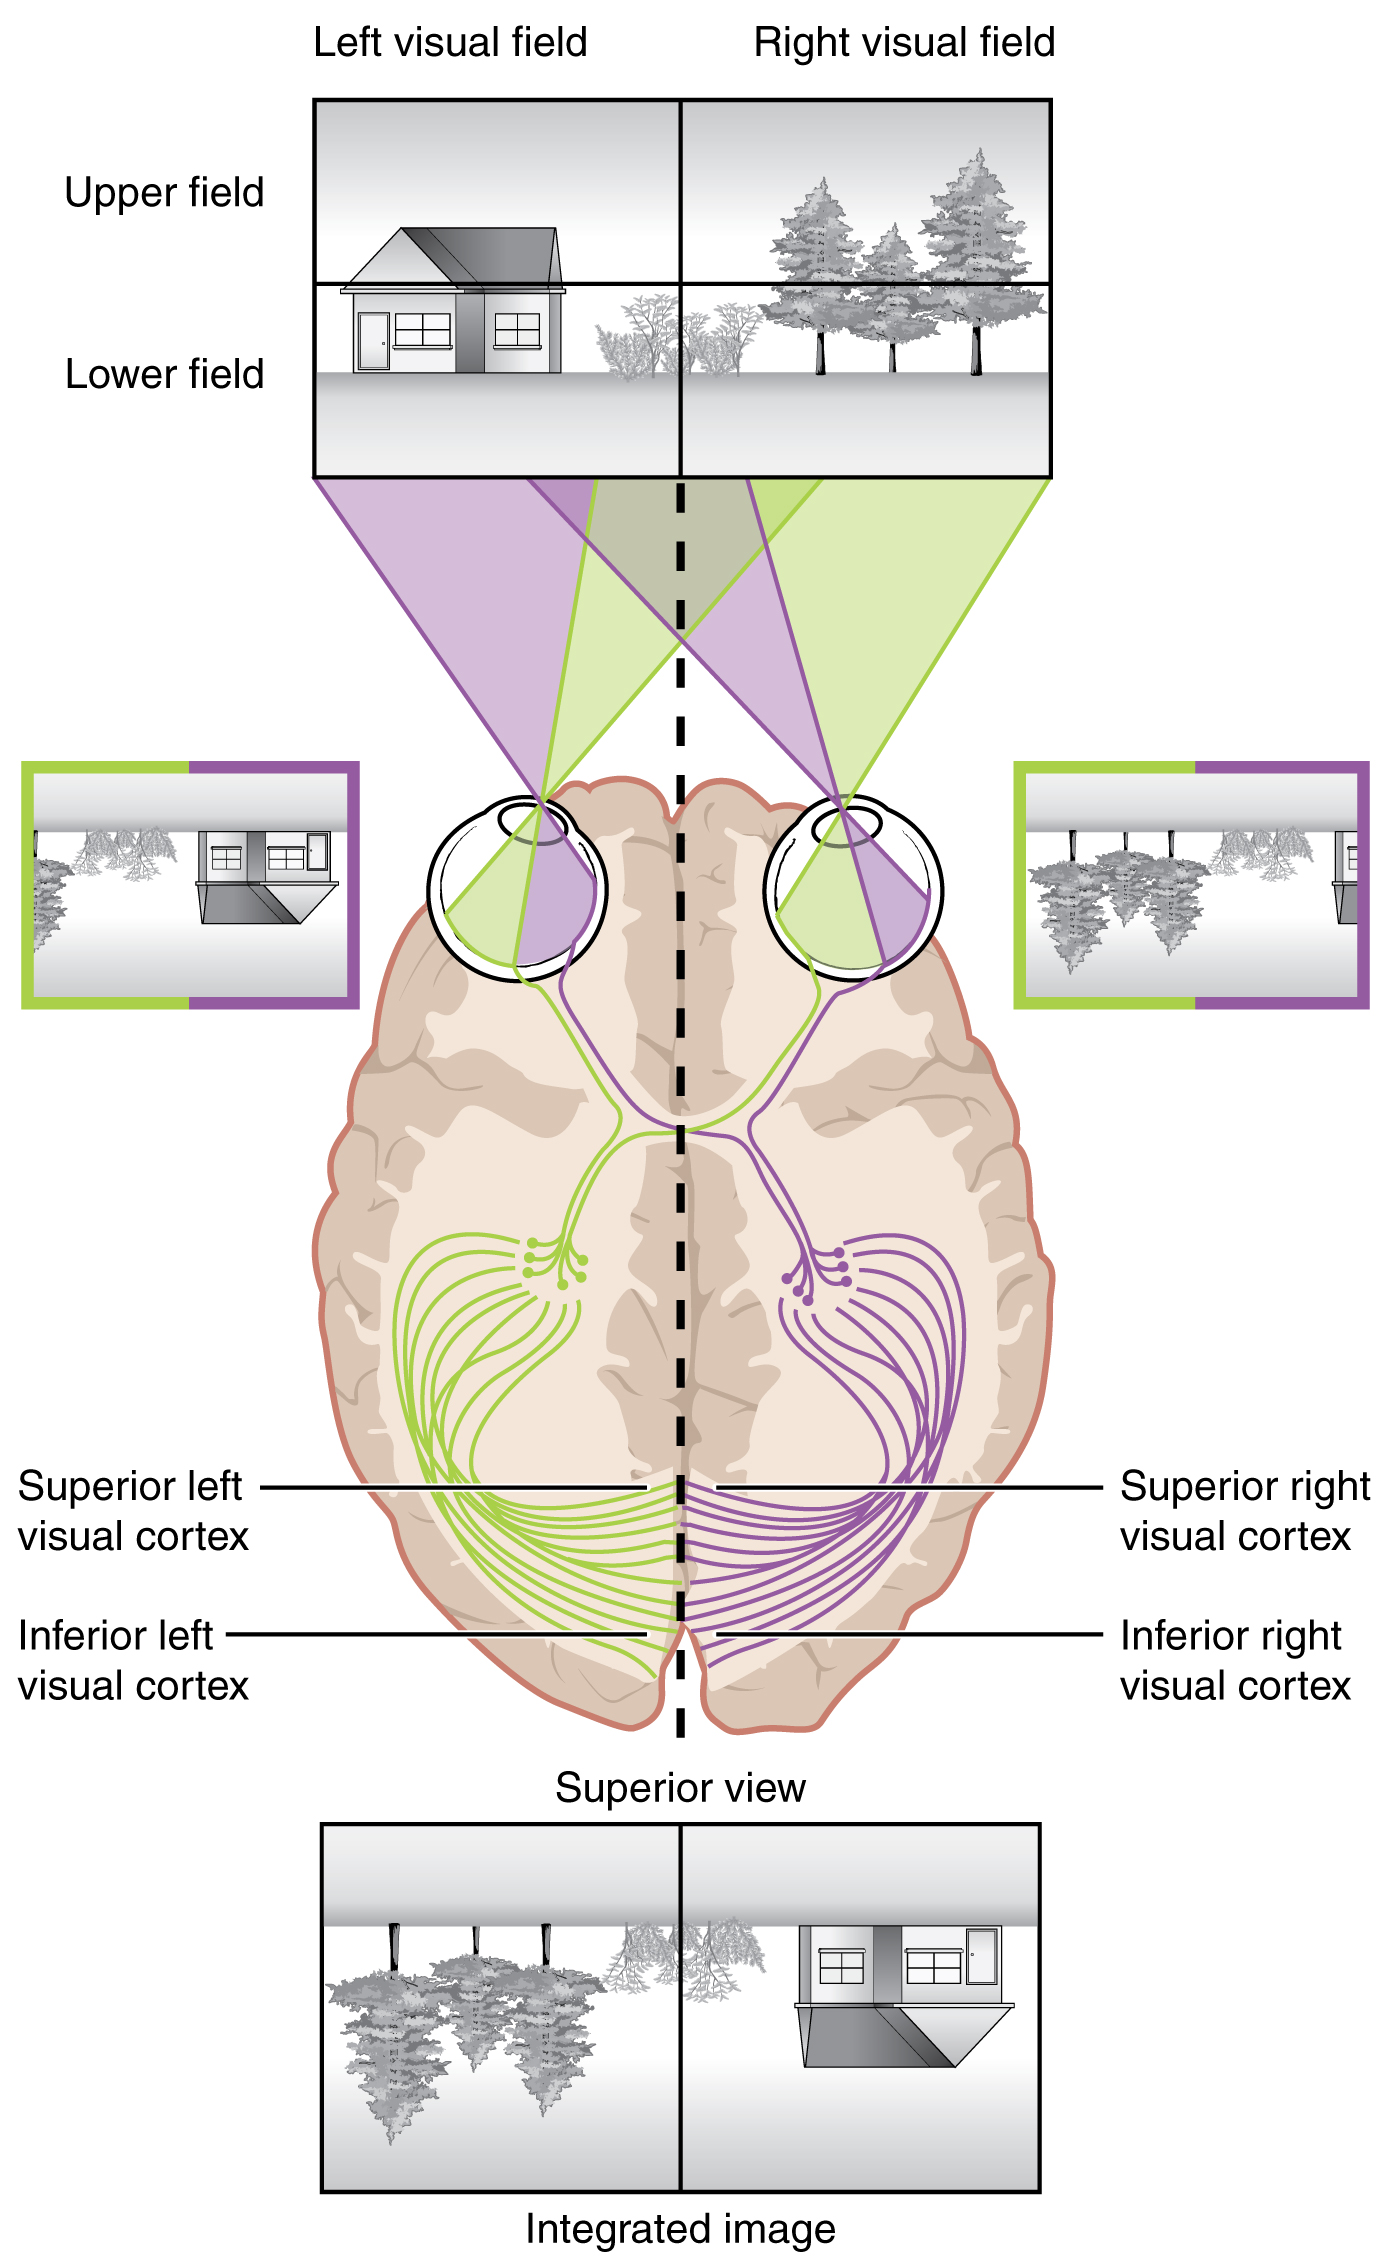 Image imegawanywa katika mashamba Visual na inaonyesha kama ilivyopangwa katika retina na Visual cortex